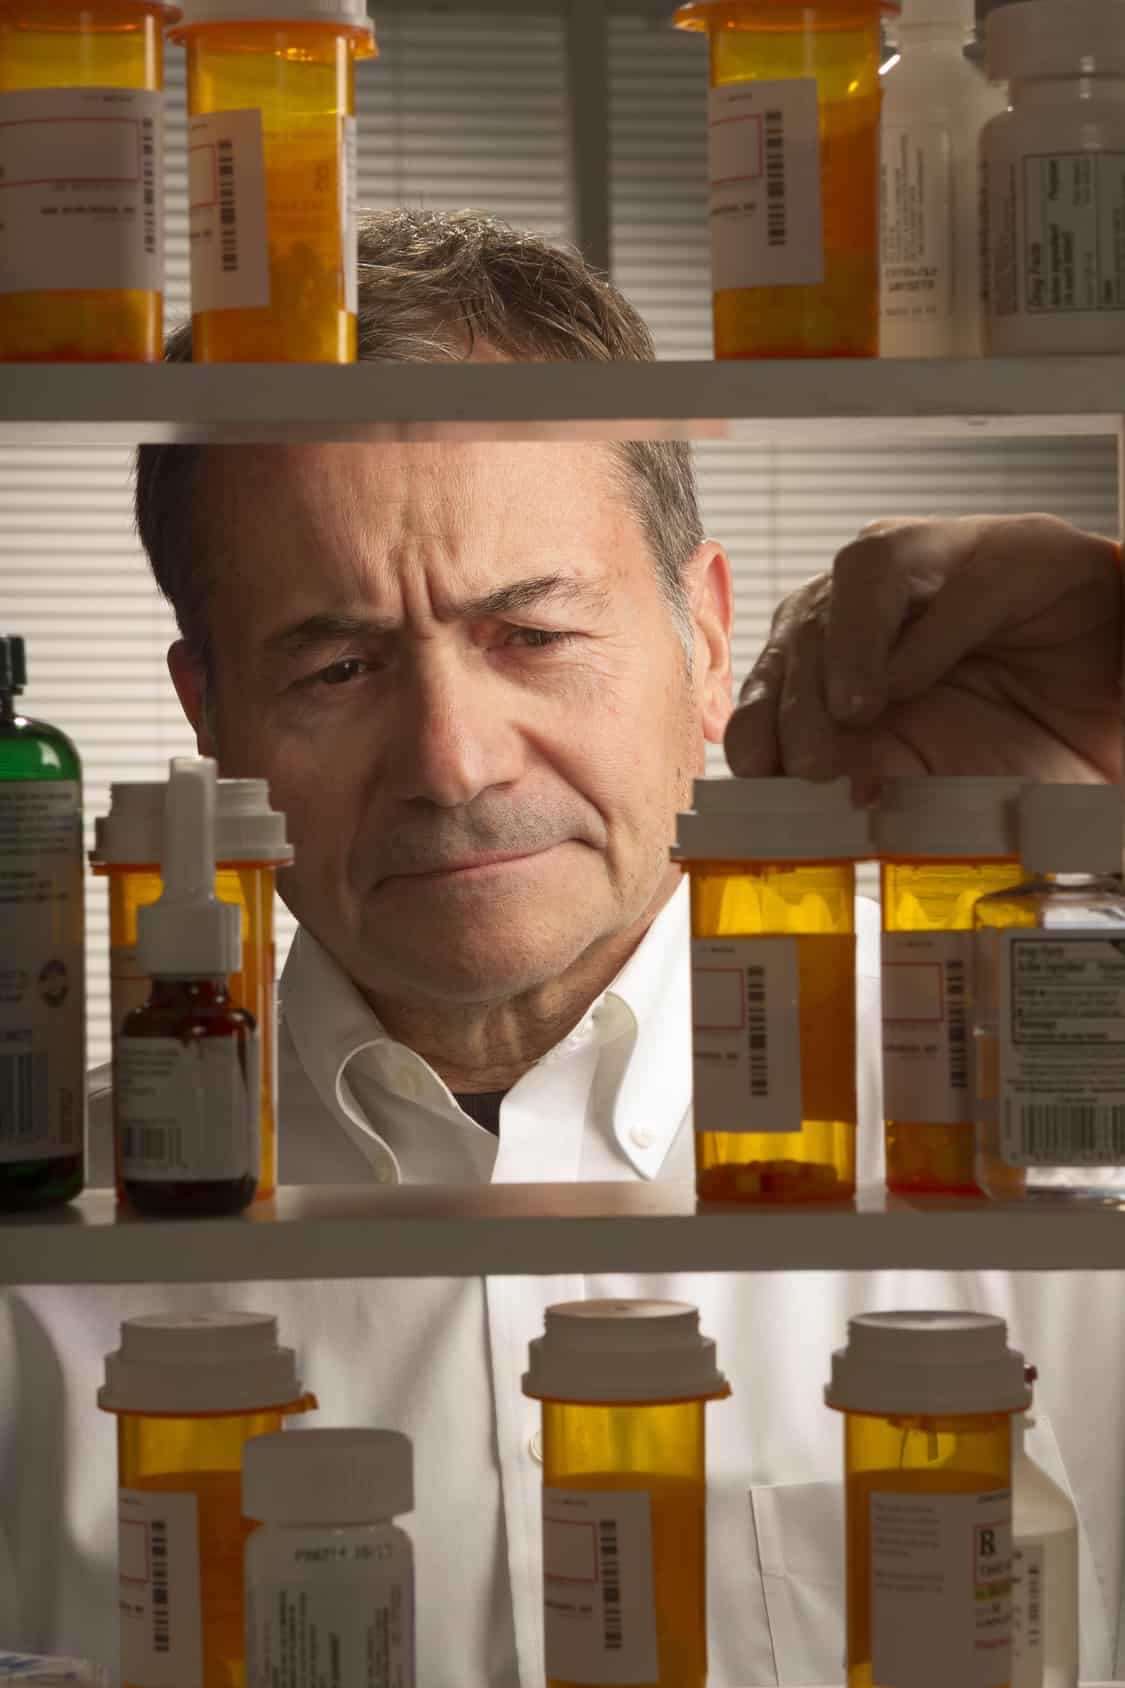 All About Prescription Drug Abuse | Renaissance Ranch